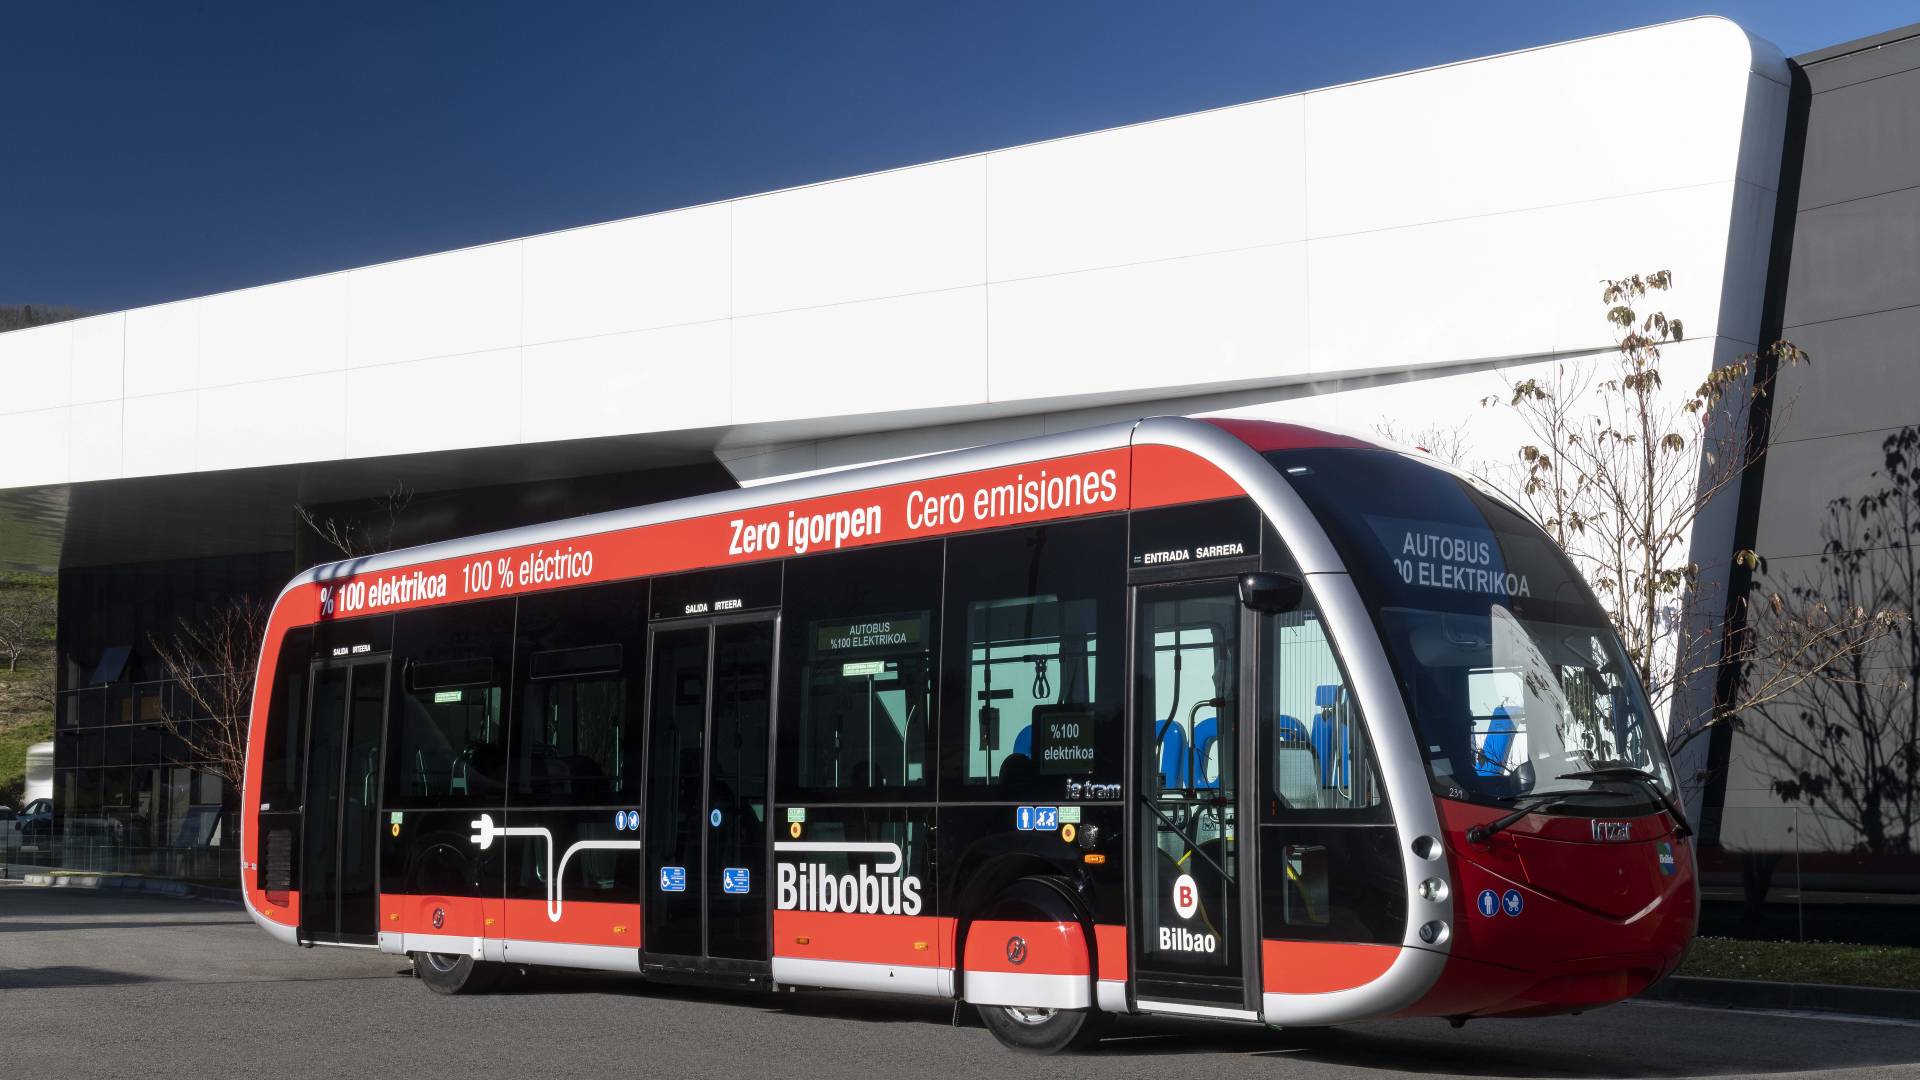 Bilbobus intègre le premier autobus électrique du modèle Irizar ie tram à sa flotte 